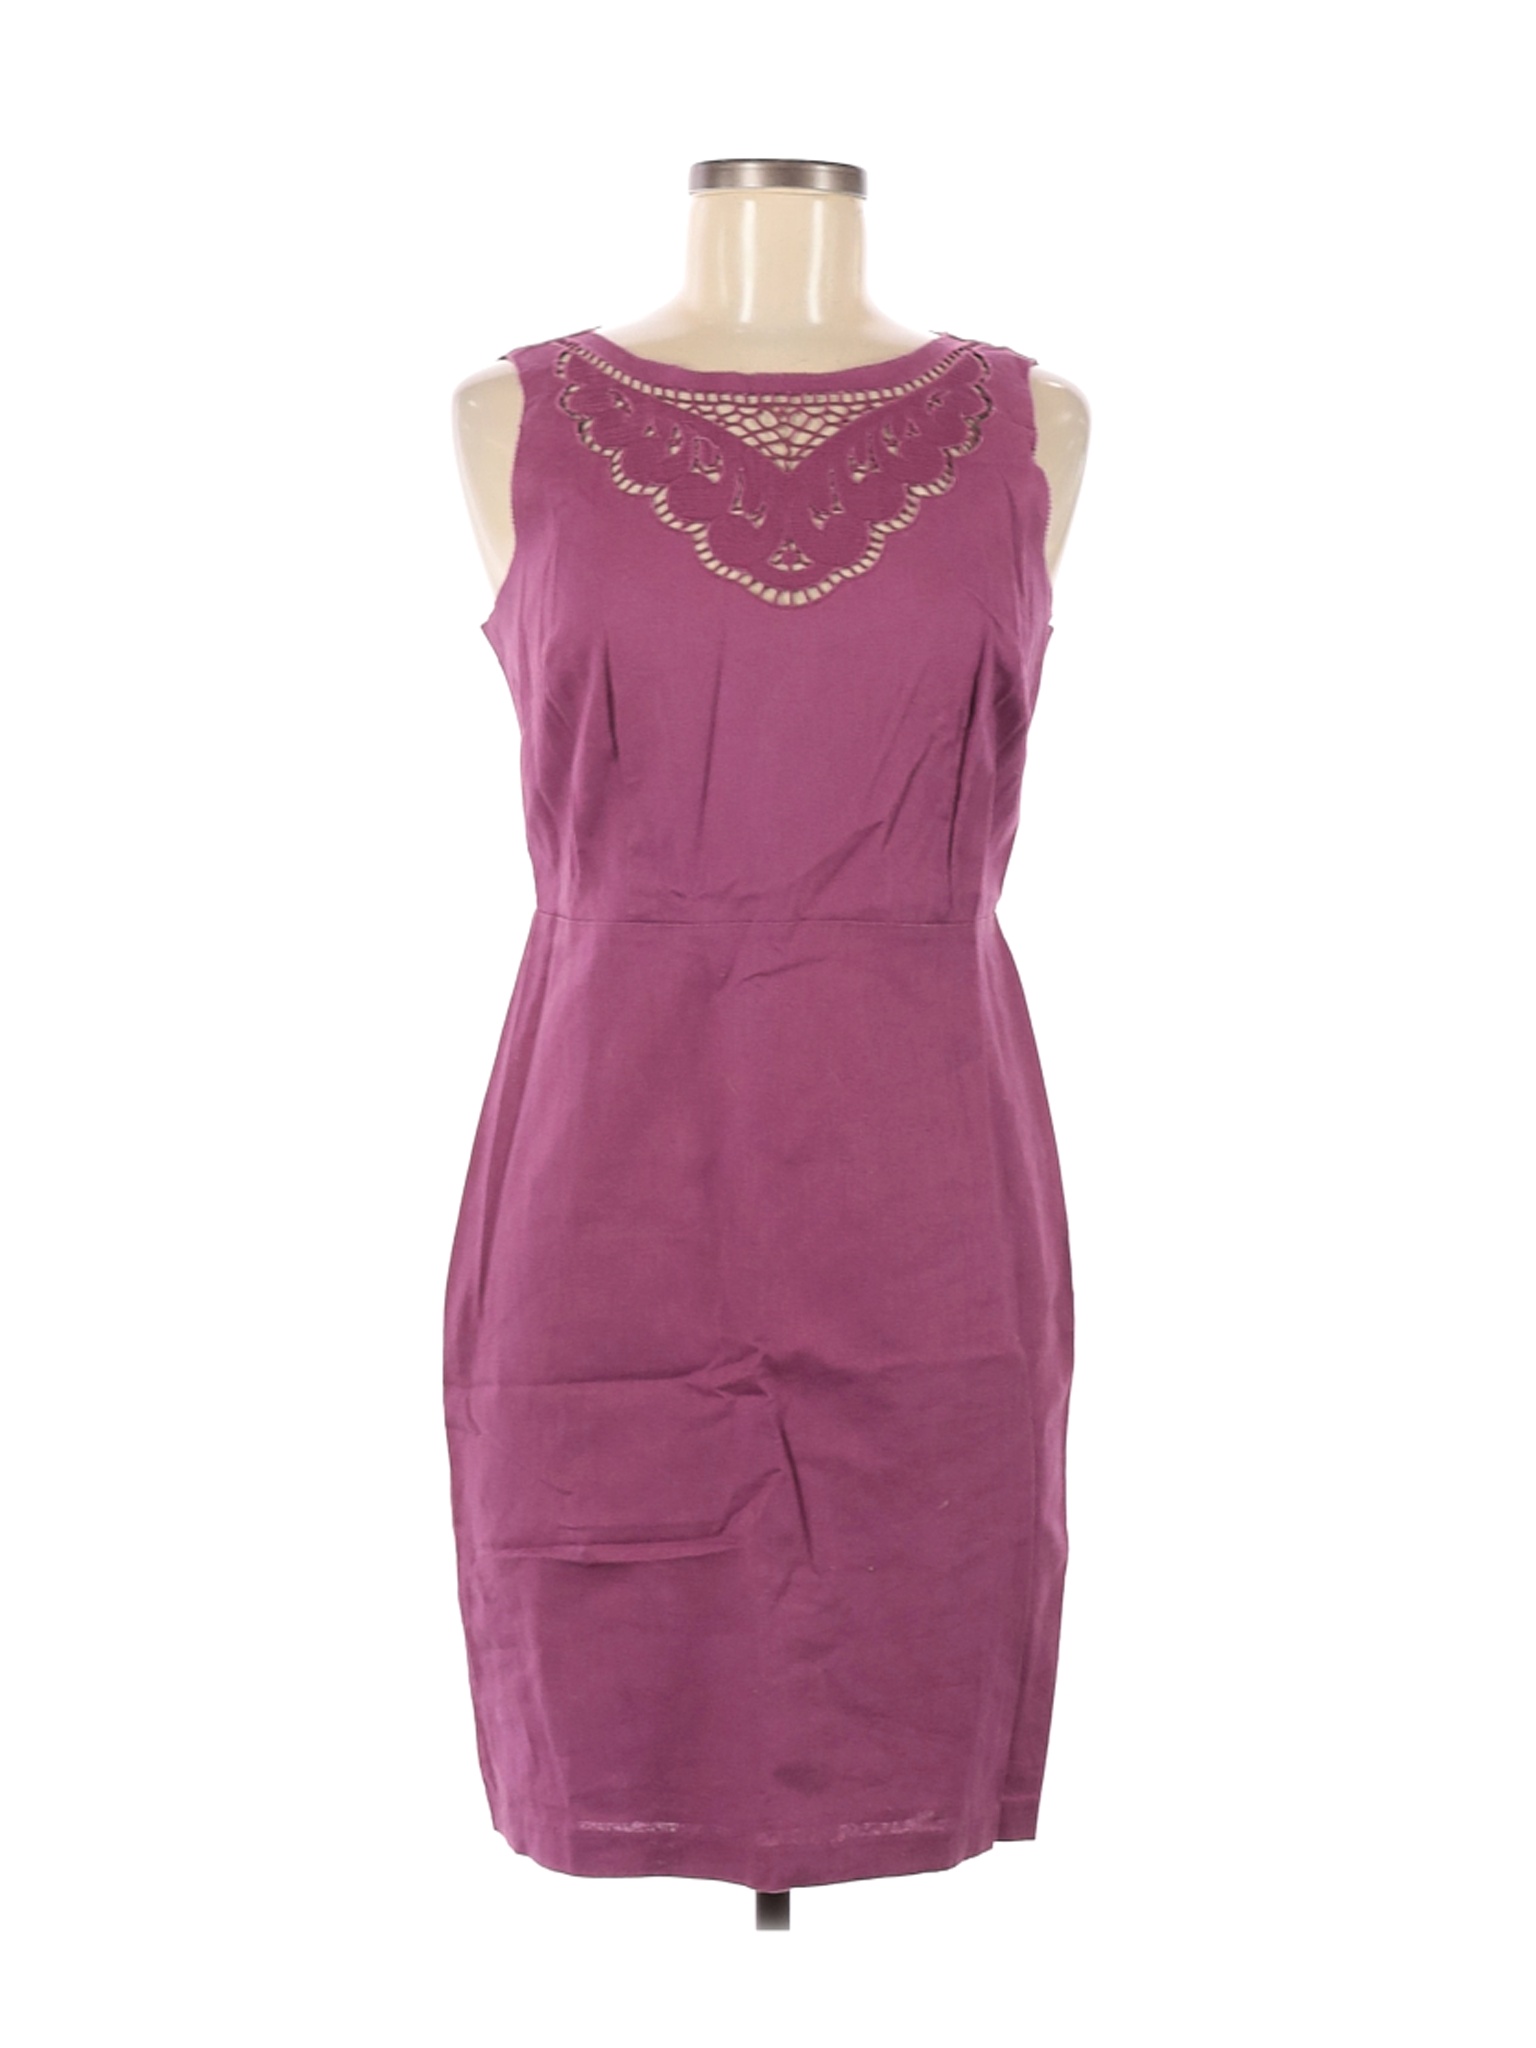 Ann Taylor LOFT Women Purple Casual Dress 6 Petites | eBay